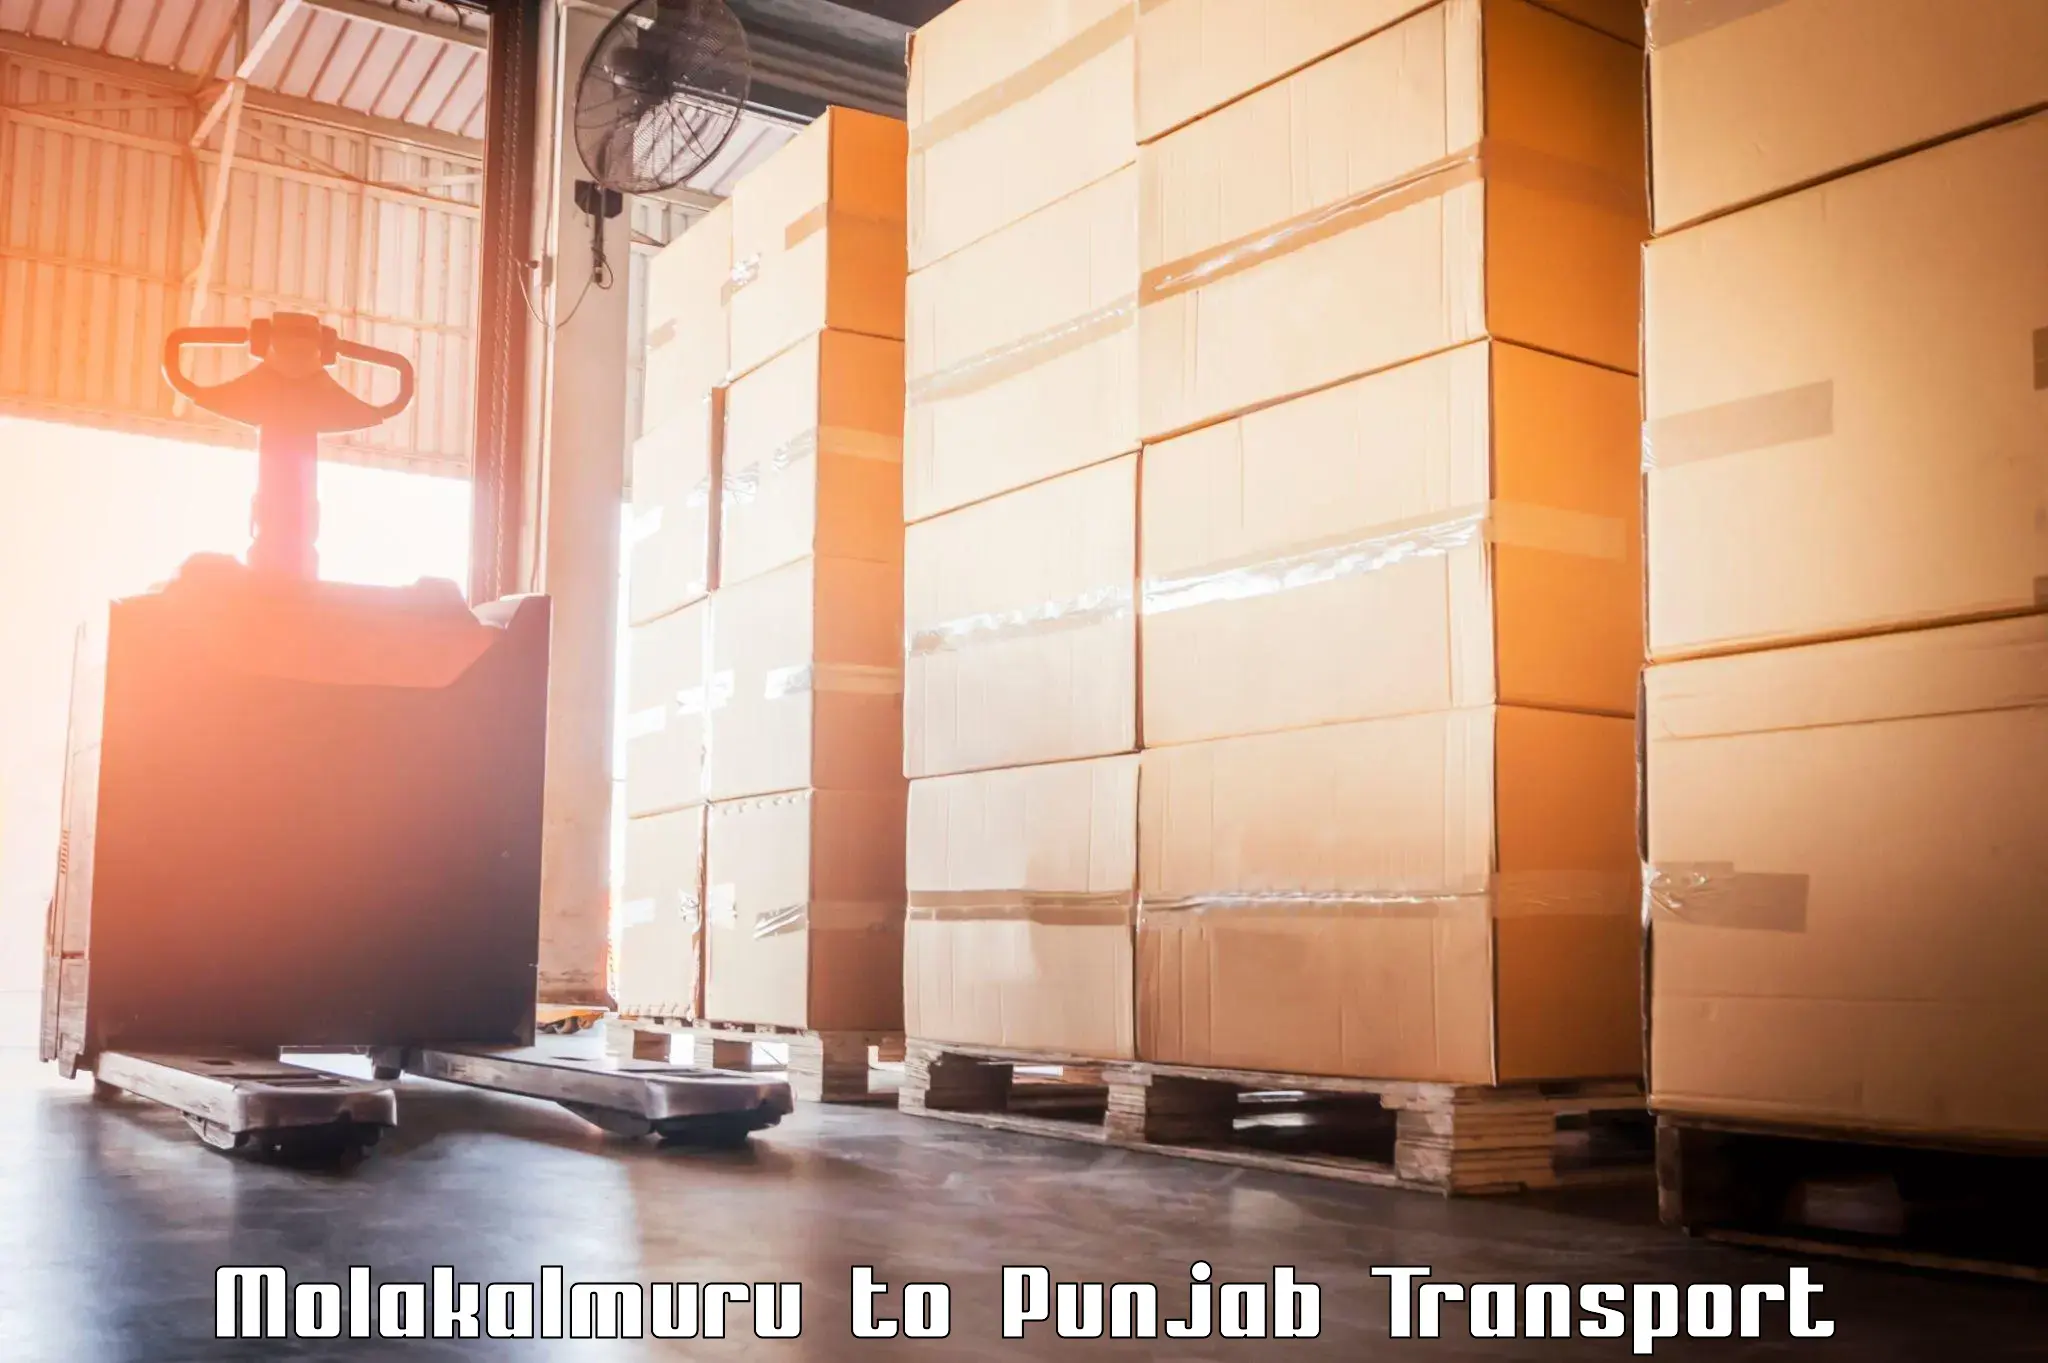 Cargo transport services Molakalmuru to Sirhind Fatehgarh